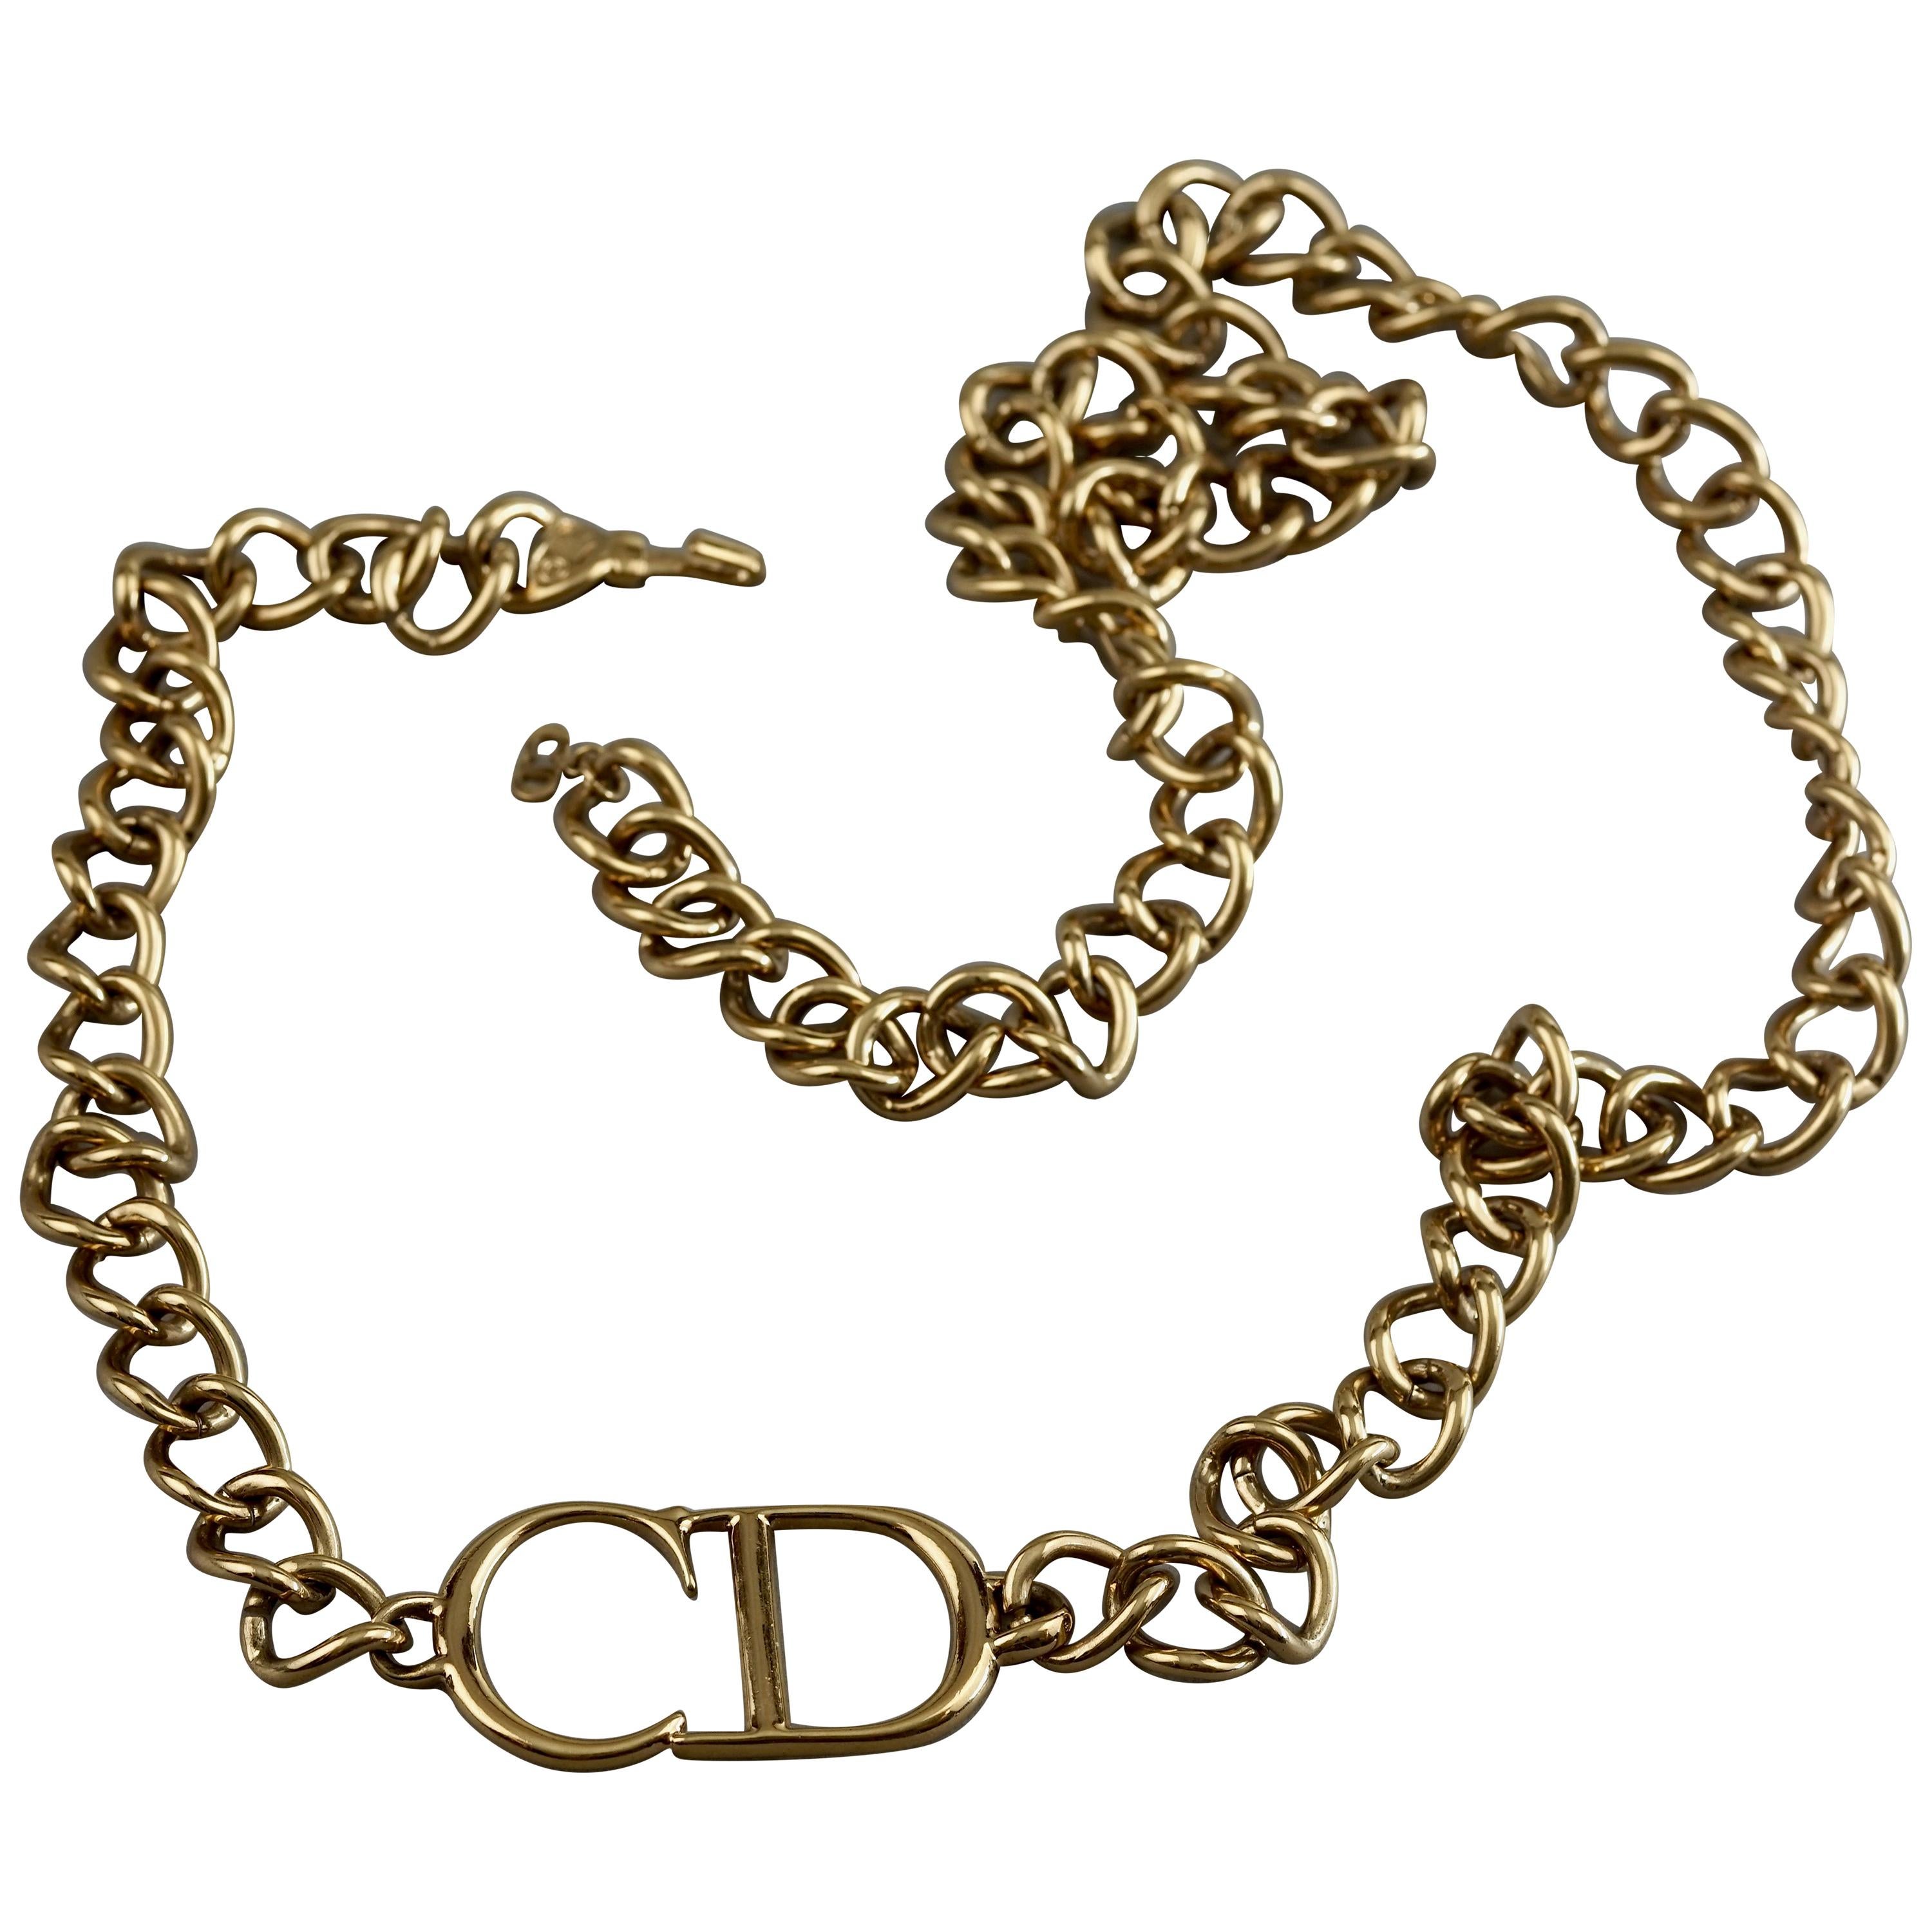 Repurposed CD Dior Necklace | Necklace, Dior necklace, Necklace designs